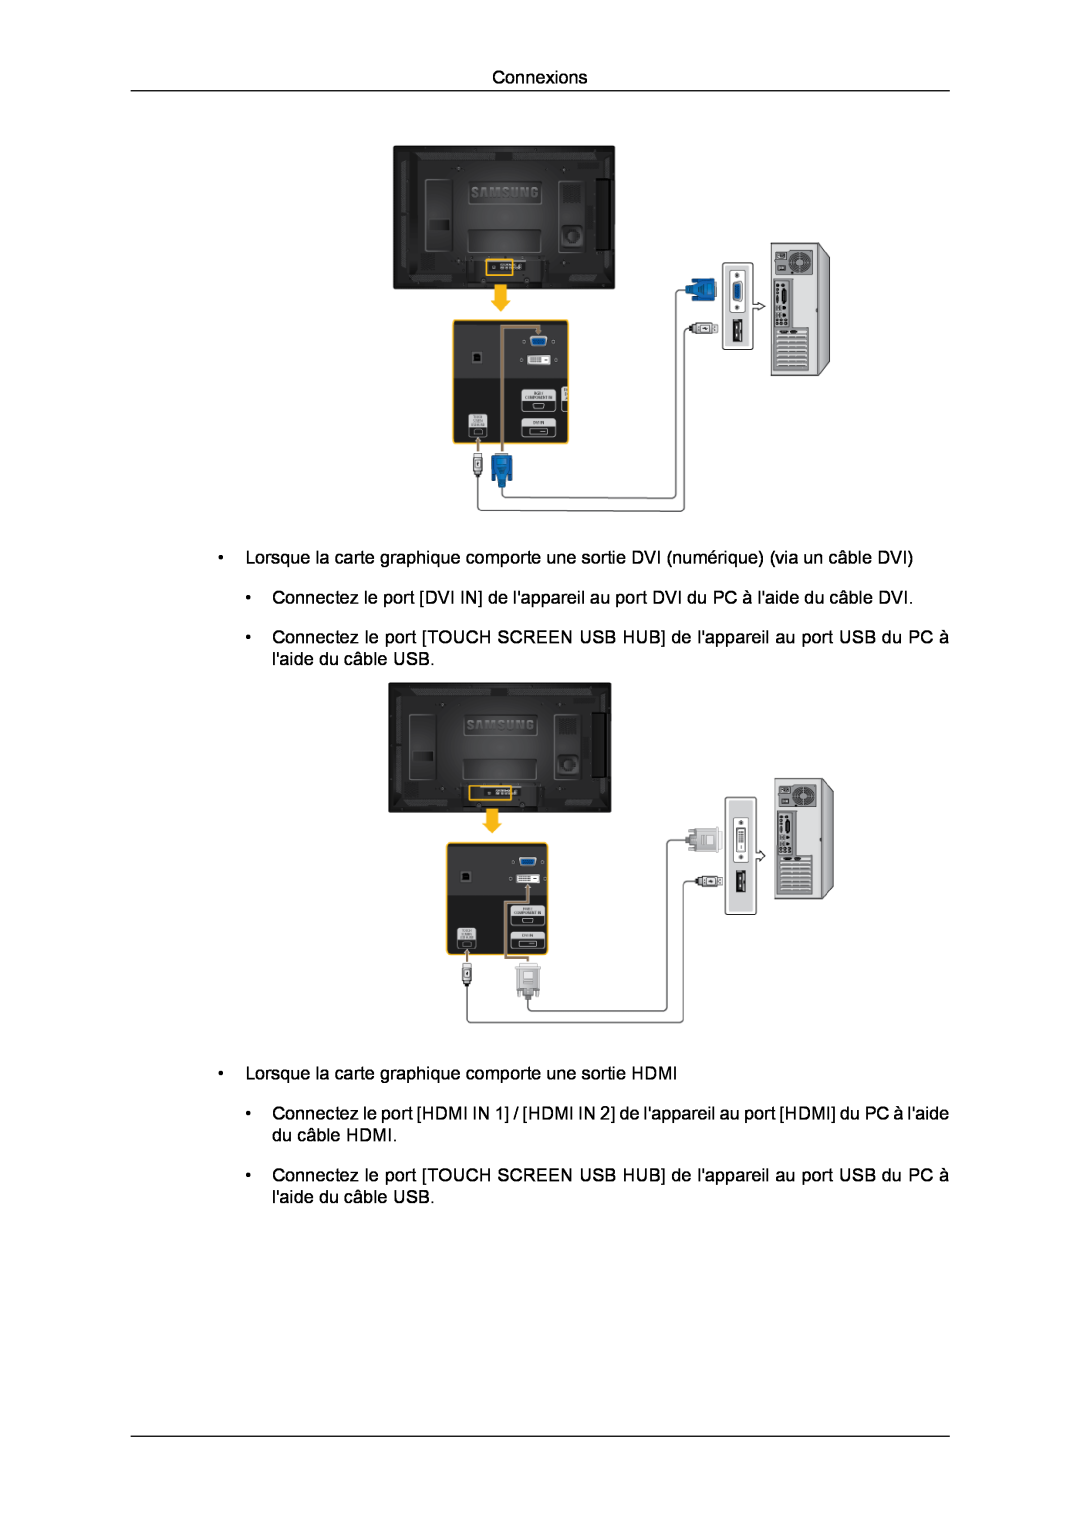 Samsung LH40CRPMBC/EN, LH46CRPMBD/EN, LH46CRPMBC/EN manual Connexions, Lorsque la carte graphique comporte une sortie HDMI 